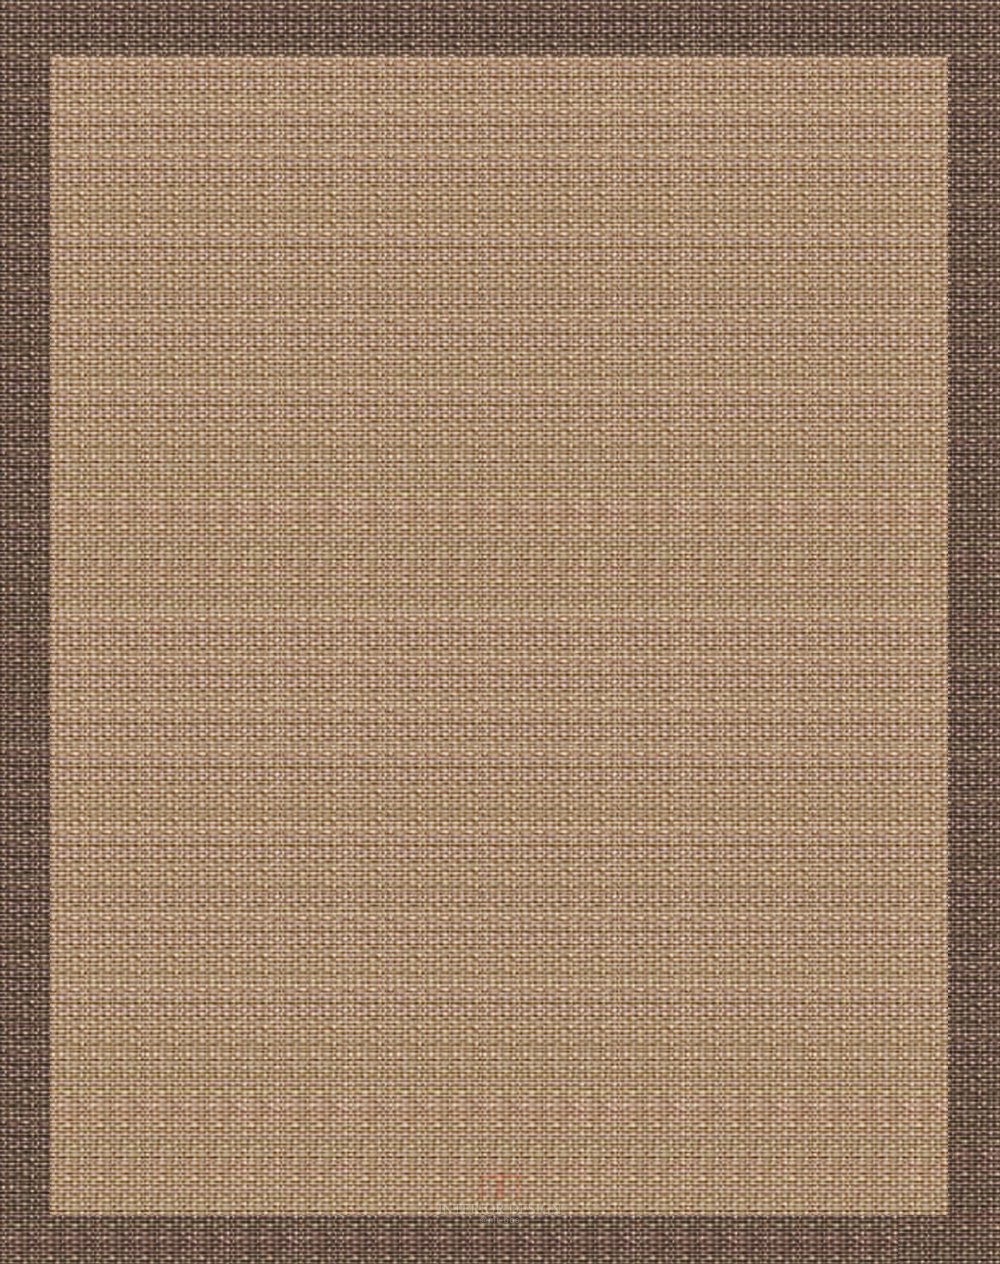 分享几款地毯_1701中式客厅地毯.jpg